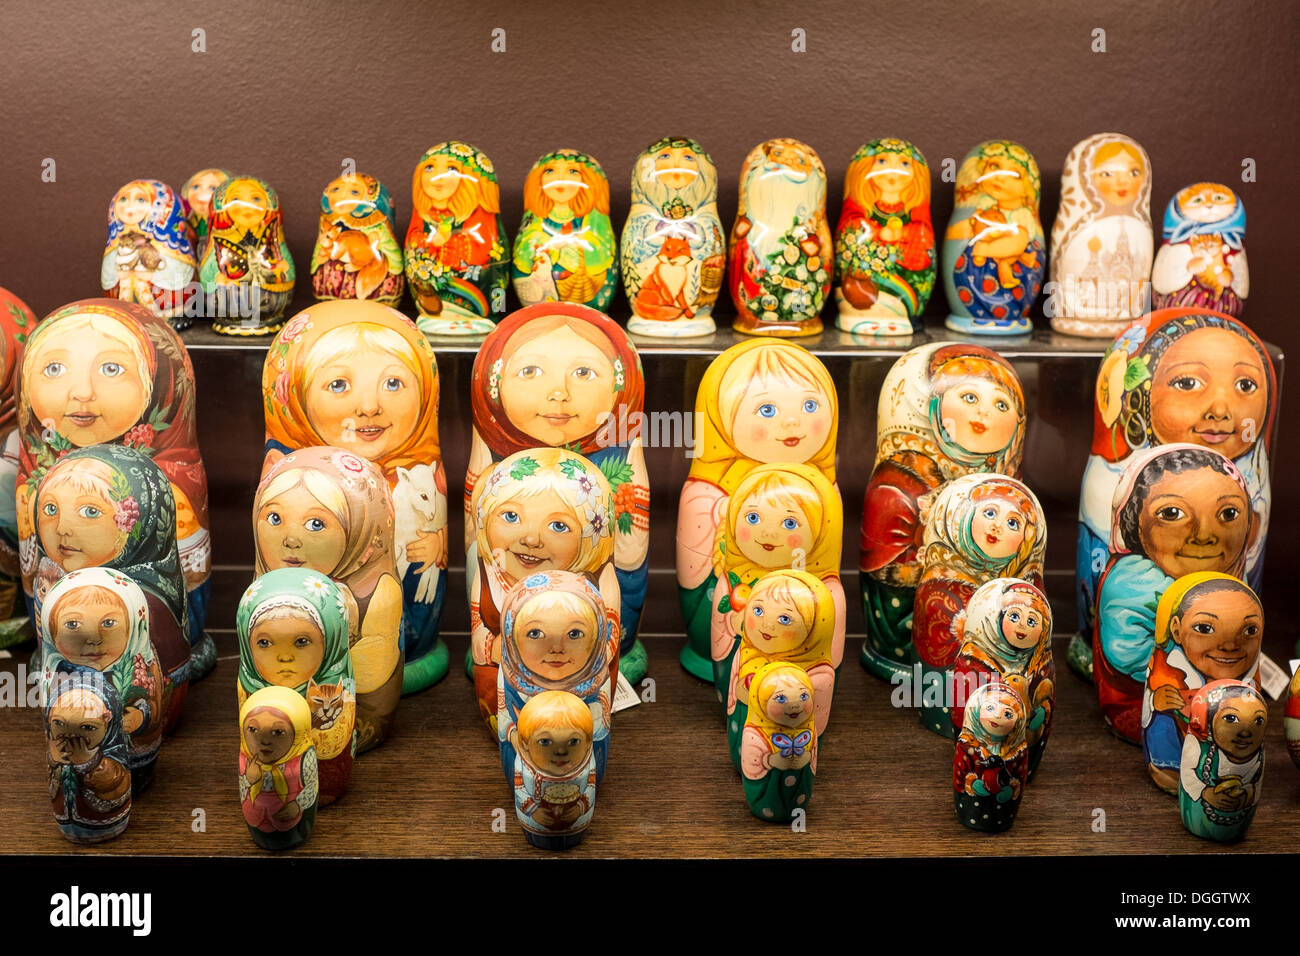 Muñecas matryoshka rusa a la venta en una tienda en San Petersburgo Foto de stock